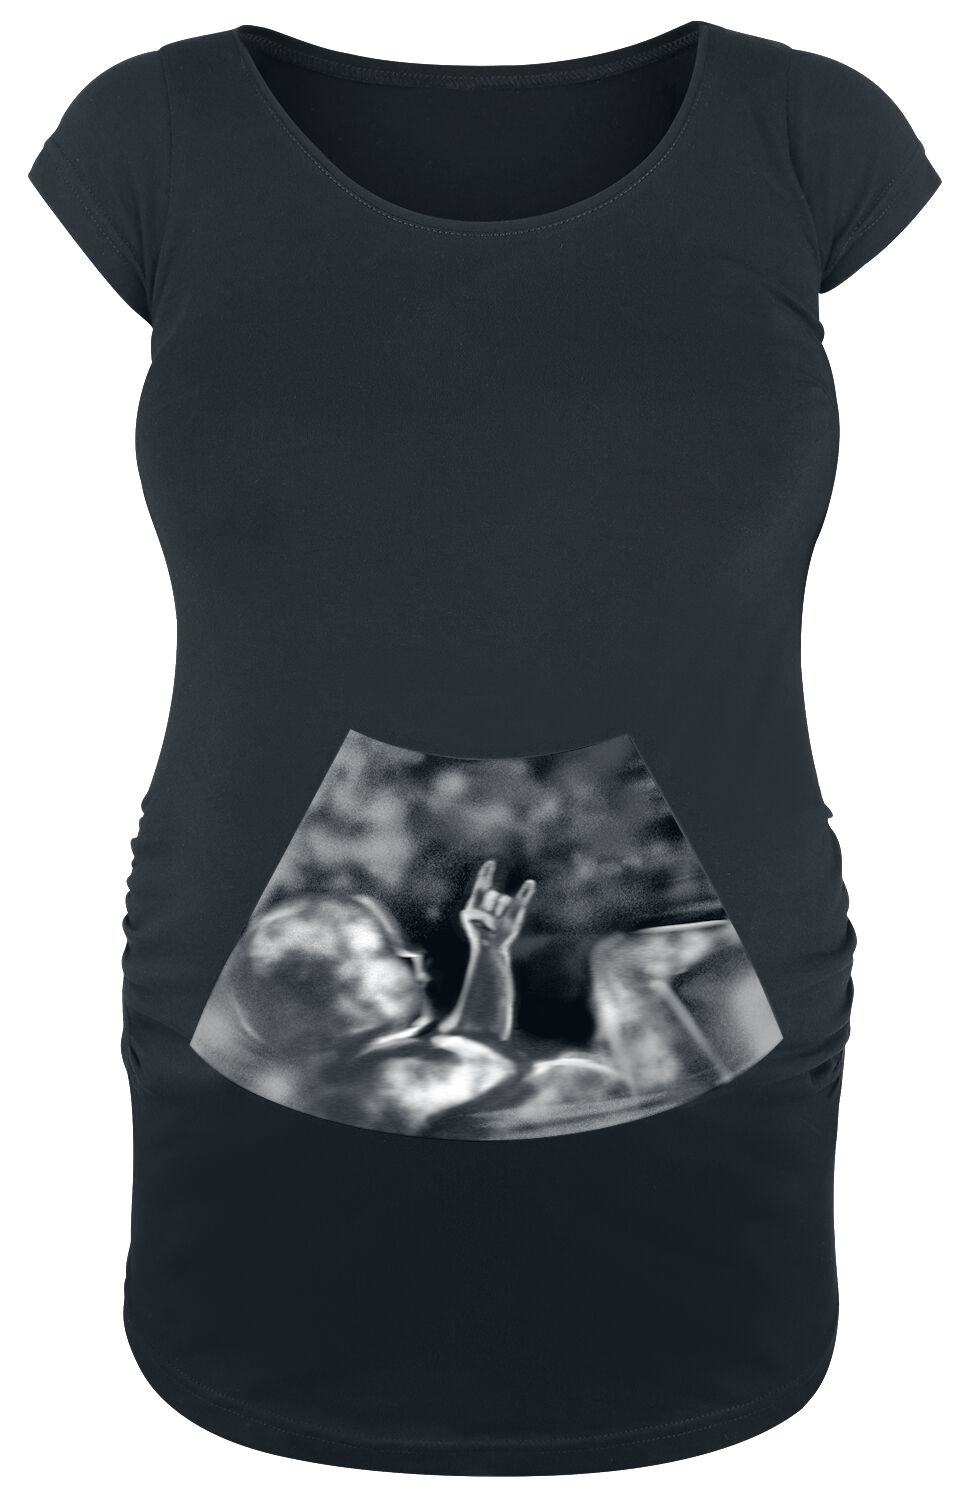 Image of T-Shirt Magliette Divertenti di Moda Premaman - Ultrasound Metal Baby Hand - S a 3XL - Donna - nero